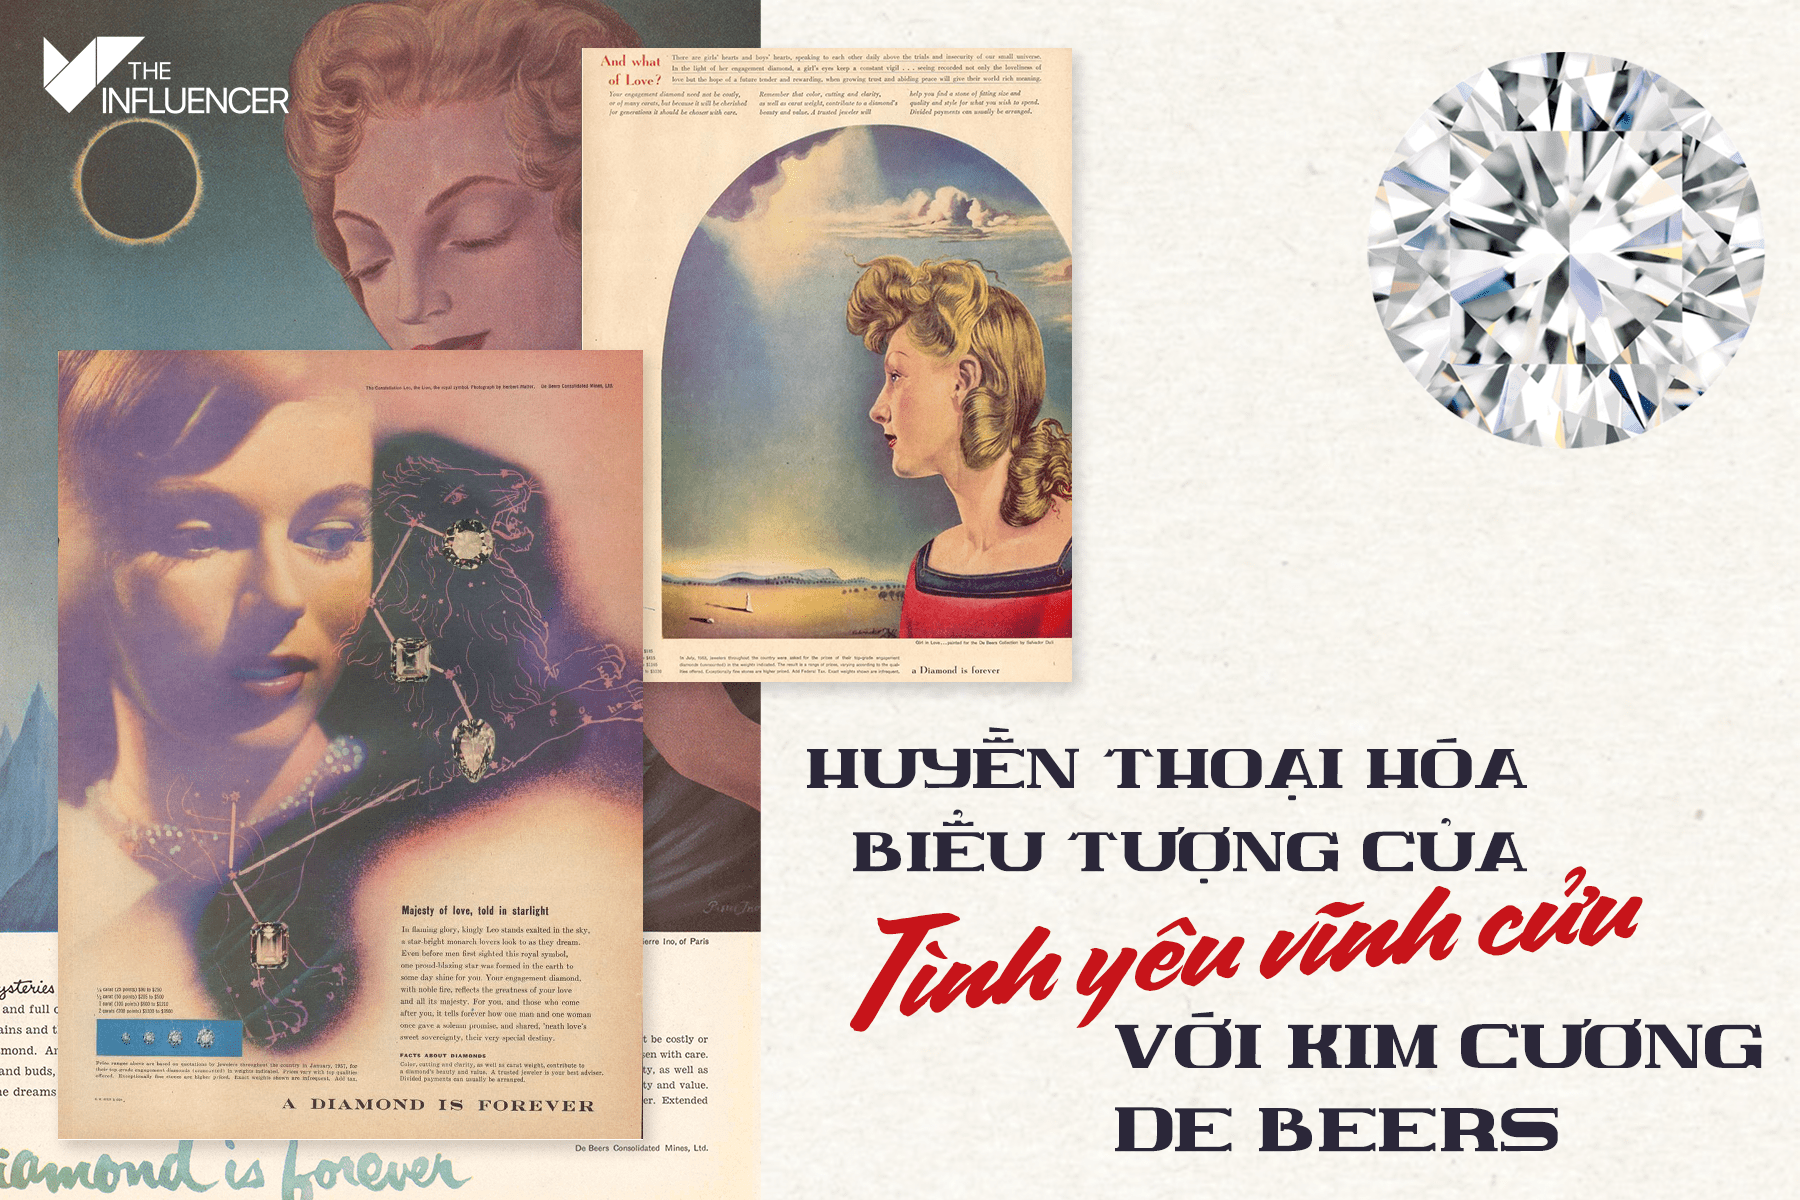 #OldbutGold: Huyền thoại hóa biểu tượng của tình yêu vĩnh cửu với Kim cương De Beers